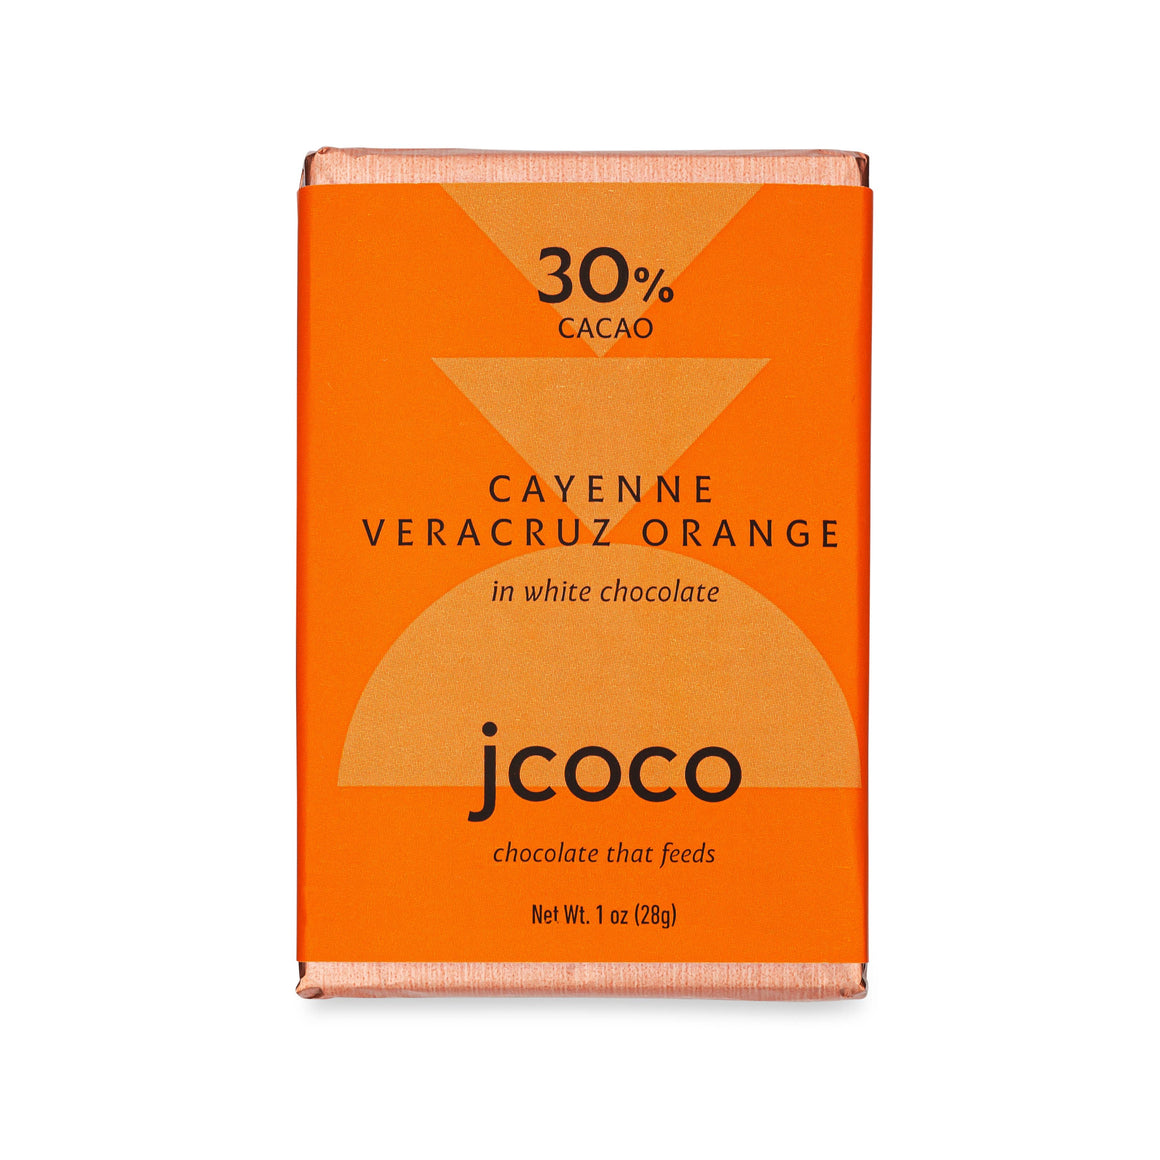 Cayenne Veracruz Orange Bar - 1 oz